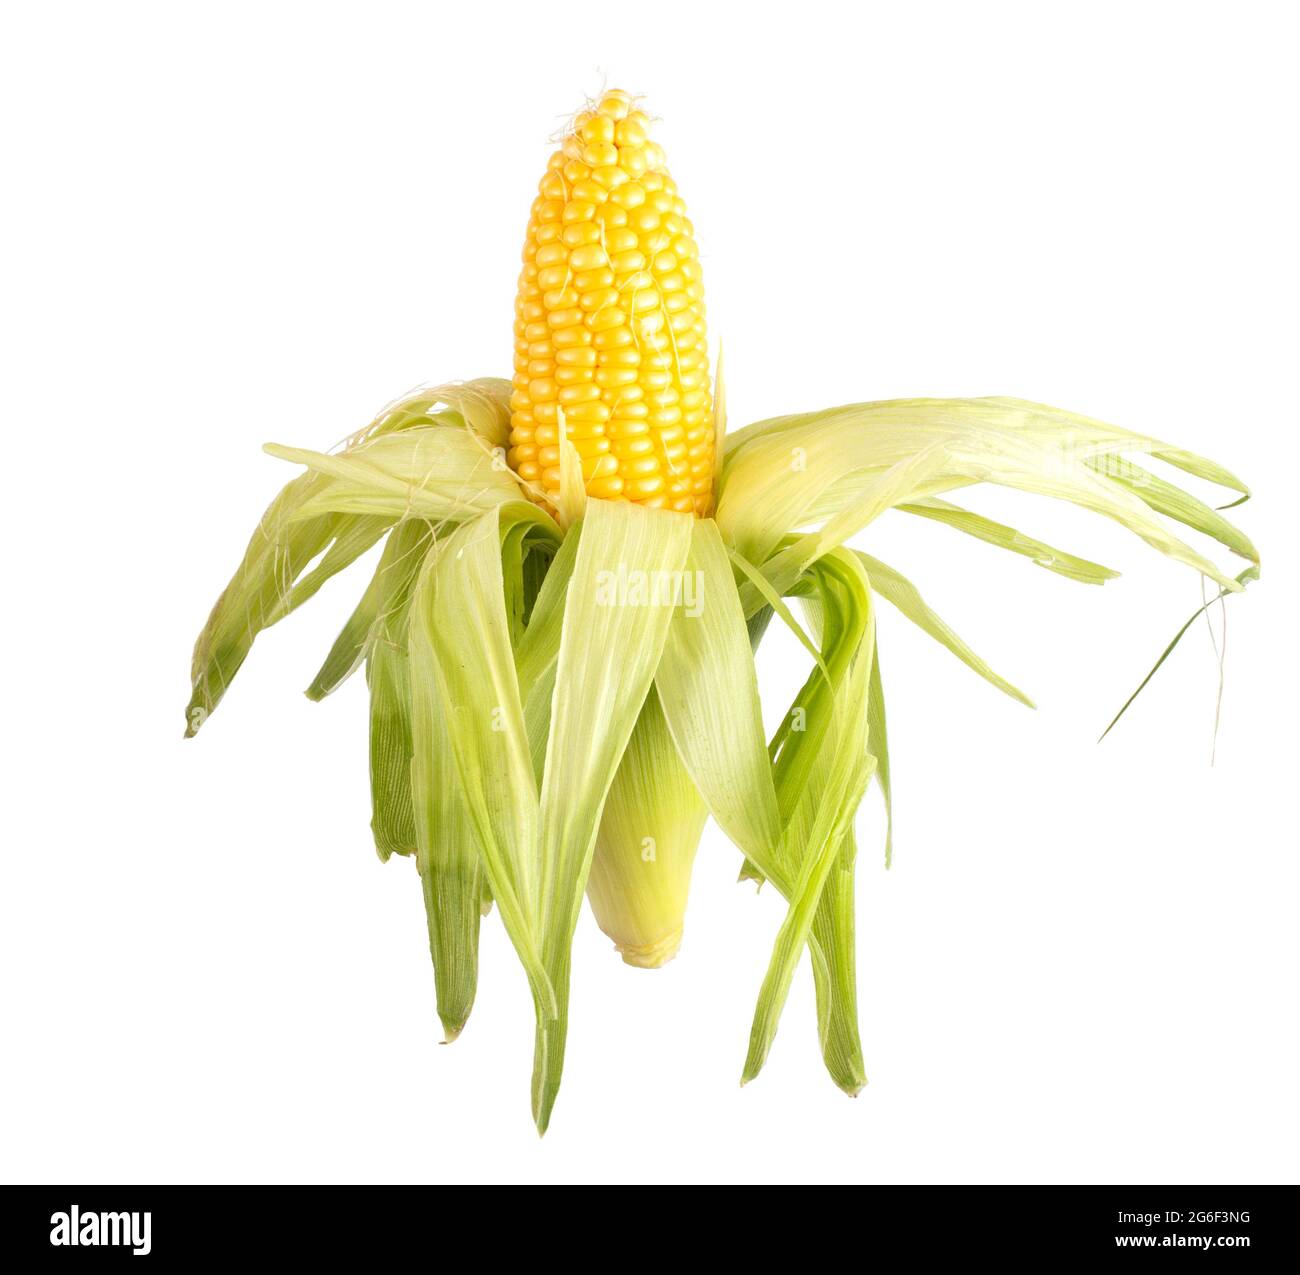 Ähre von süßem Mais in Schale auf weißem Hintergrund, isolieren.  Natürlicher Mais, Landwirtschaft, Labyrinth Stockfotografie - Alamy